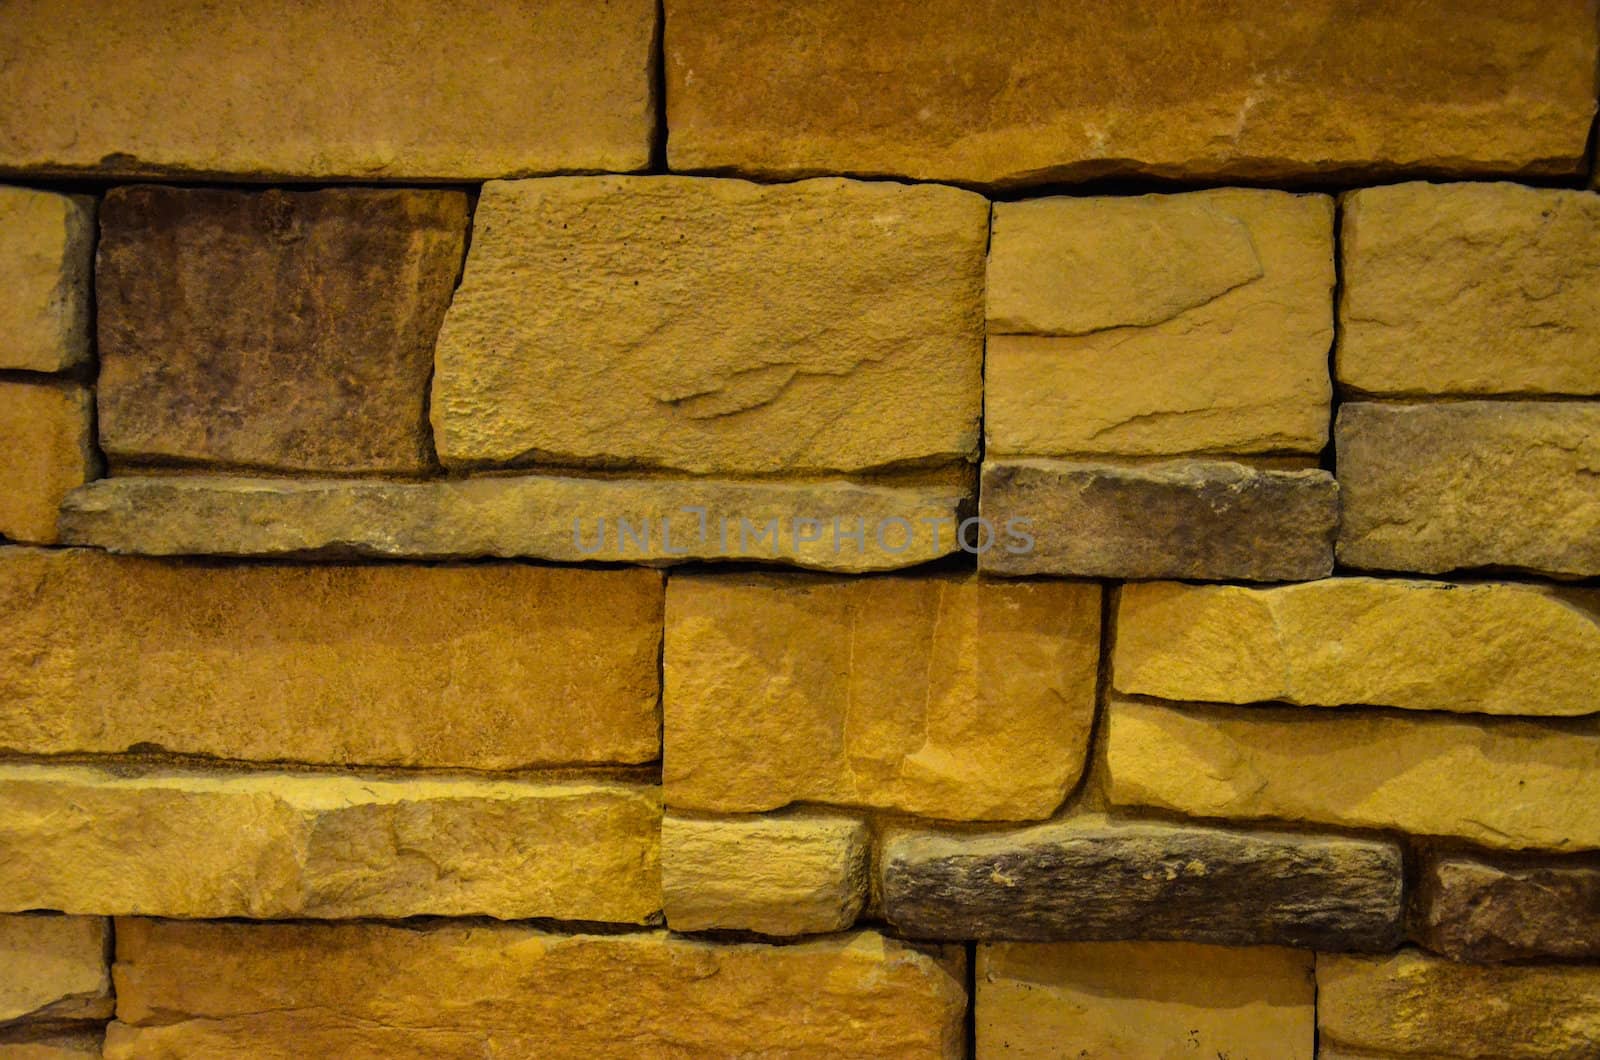 Brick tile walls.